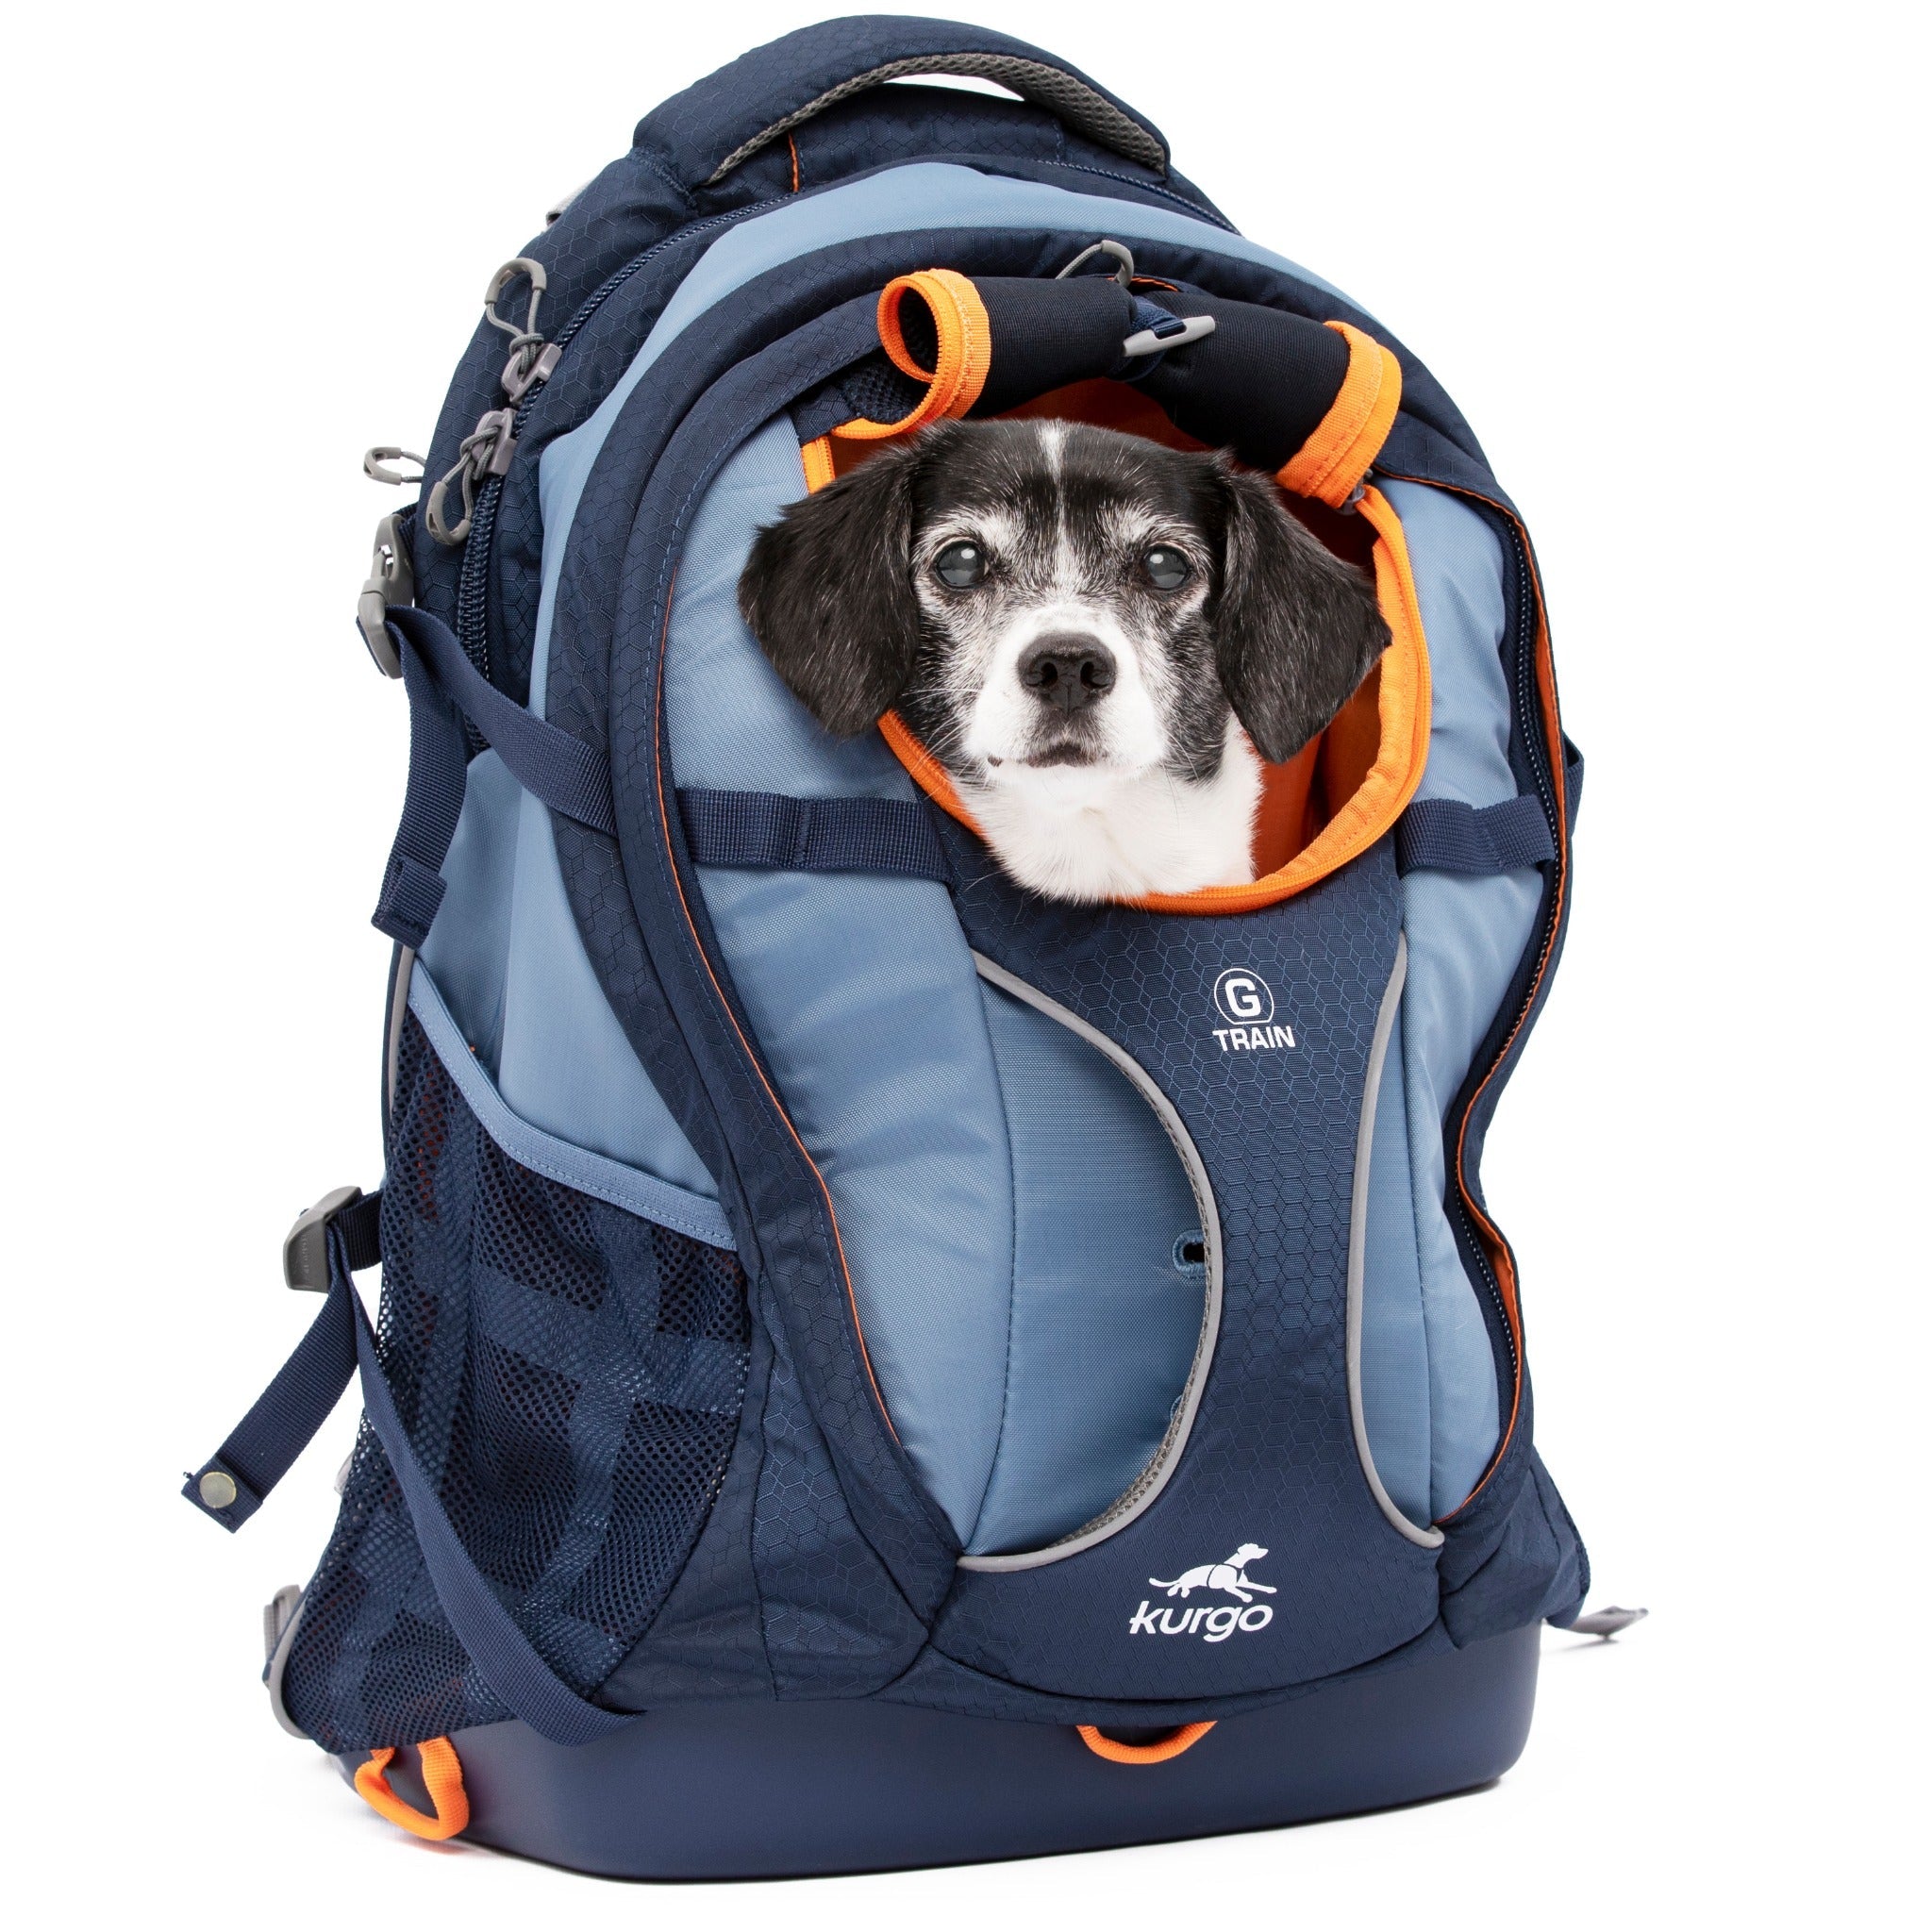 Kurgo G-Train K9 Pack, sac à dos de transport pour chien